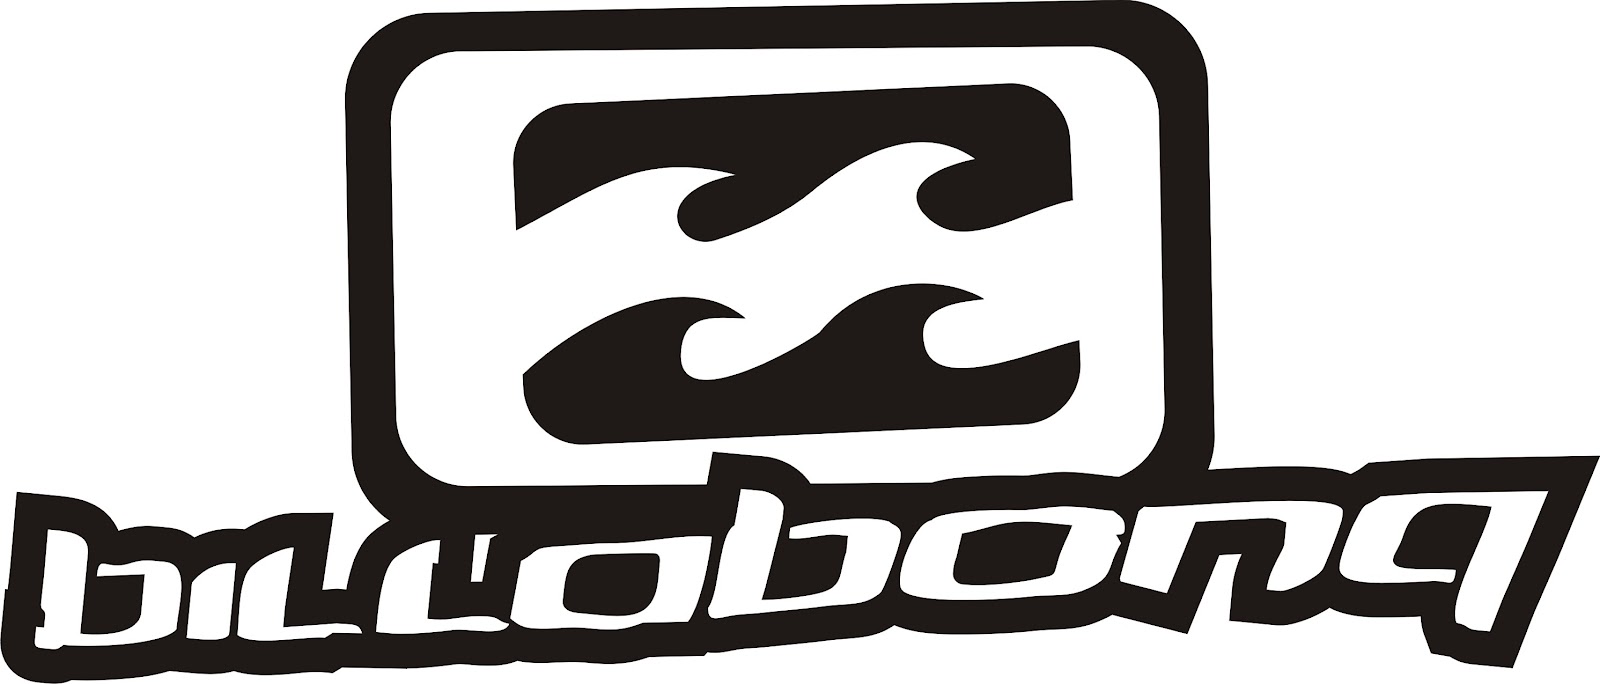 Billabong Logos